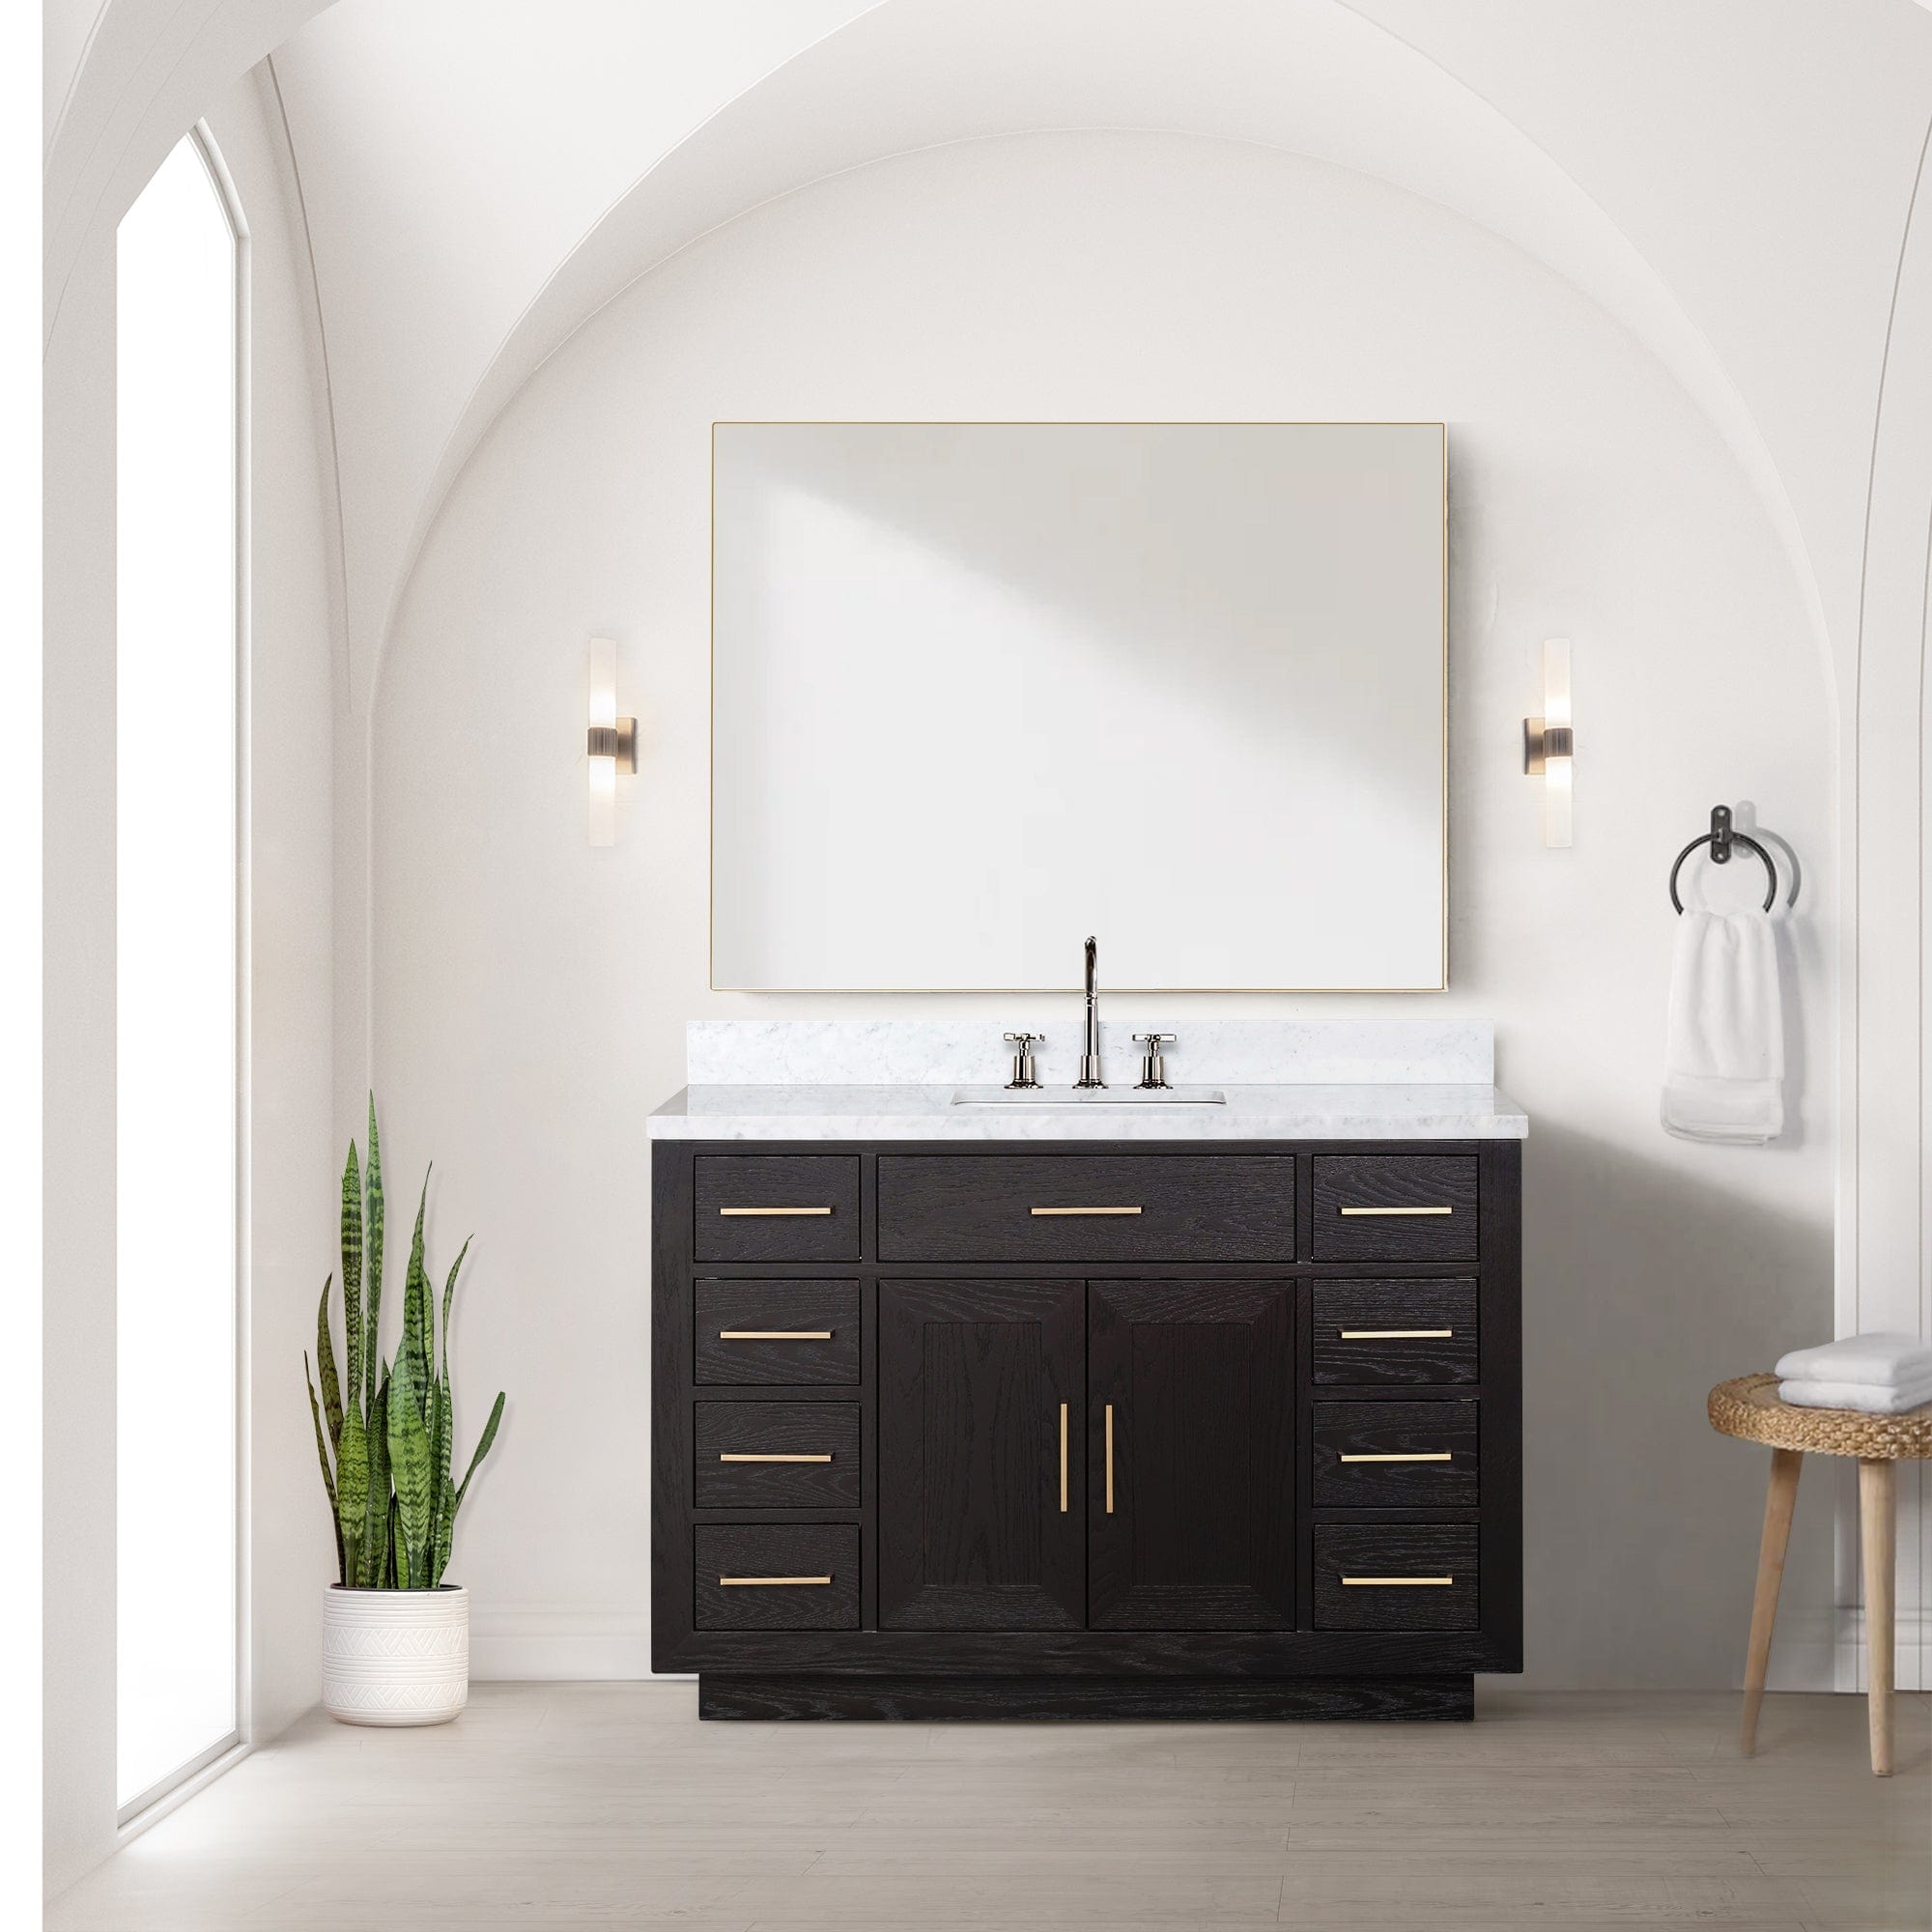 Bell + Modern Bathroom Vanity 48